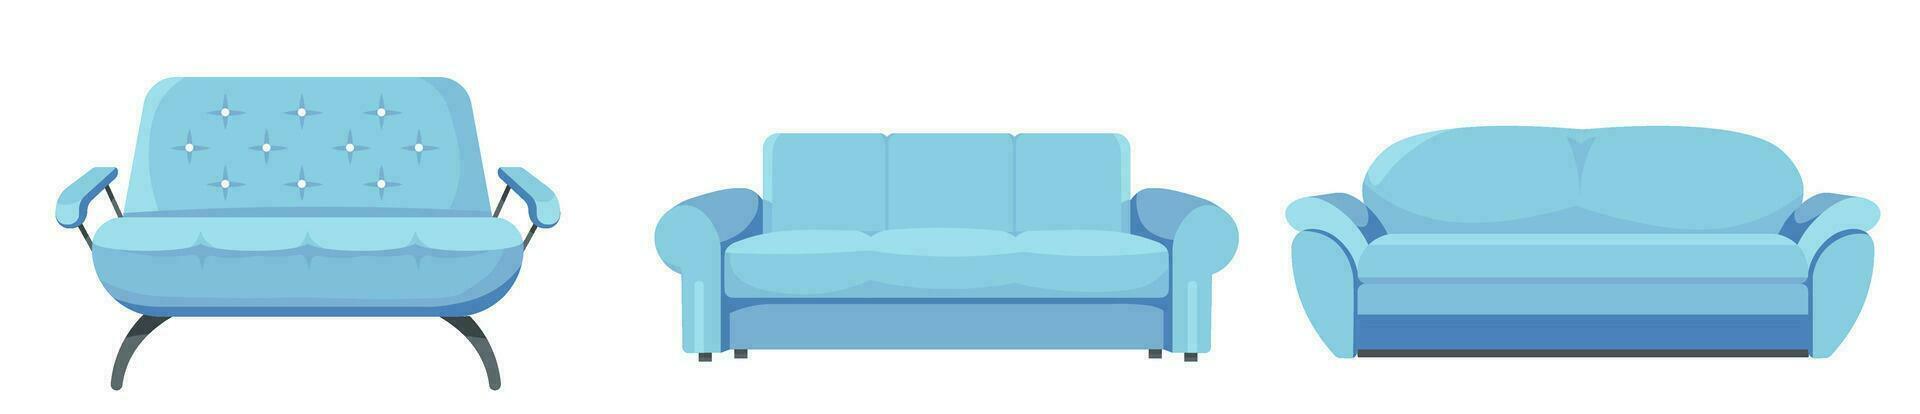 moderno divano per vivente camera, interno progettazione vettore